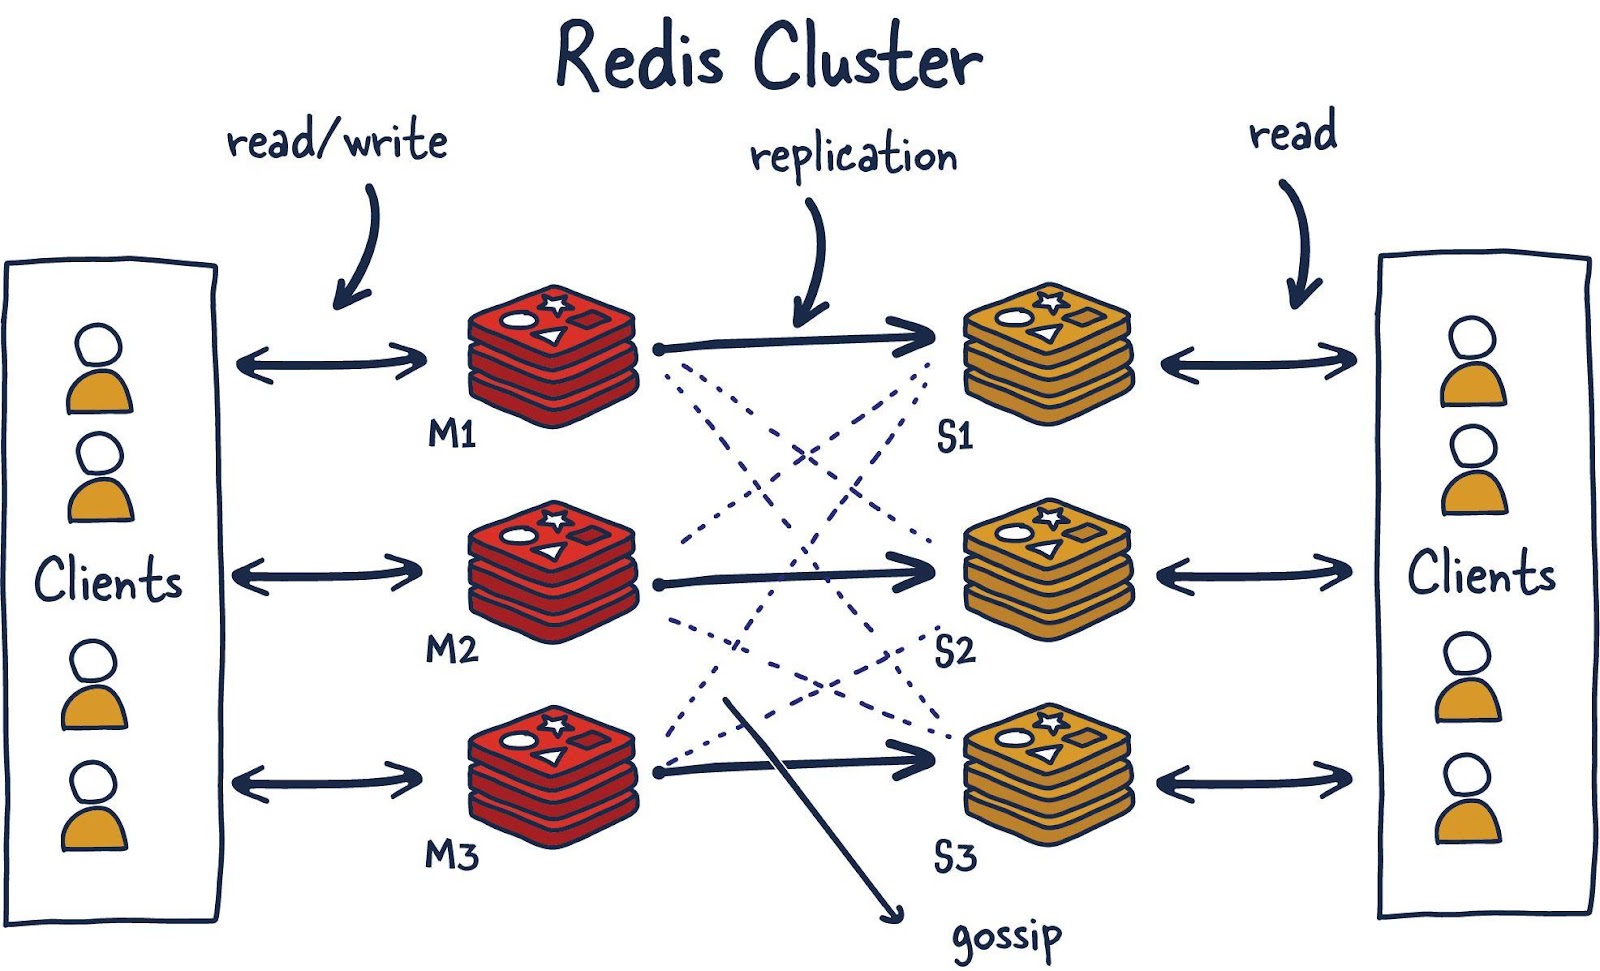 Кластер Redis. Клиенты выполняют операции чтения/записи, взаимодействуя с ведущими (M1, M2, M3) узлами Redis. Между ведущими и подчинёнными (S1, S2, S3) выполняется репликация данных. Другие клиенты, обращаясь к подчинённым узлам, выполняют операции чтения данных. Для определения общего состояния кластера используется протокол Gossip.